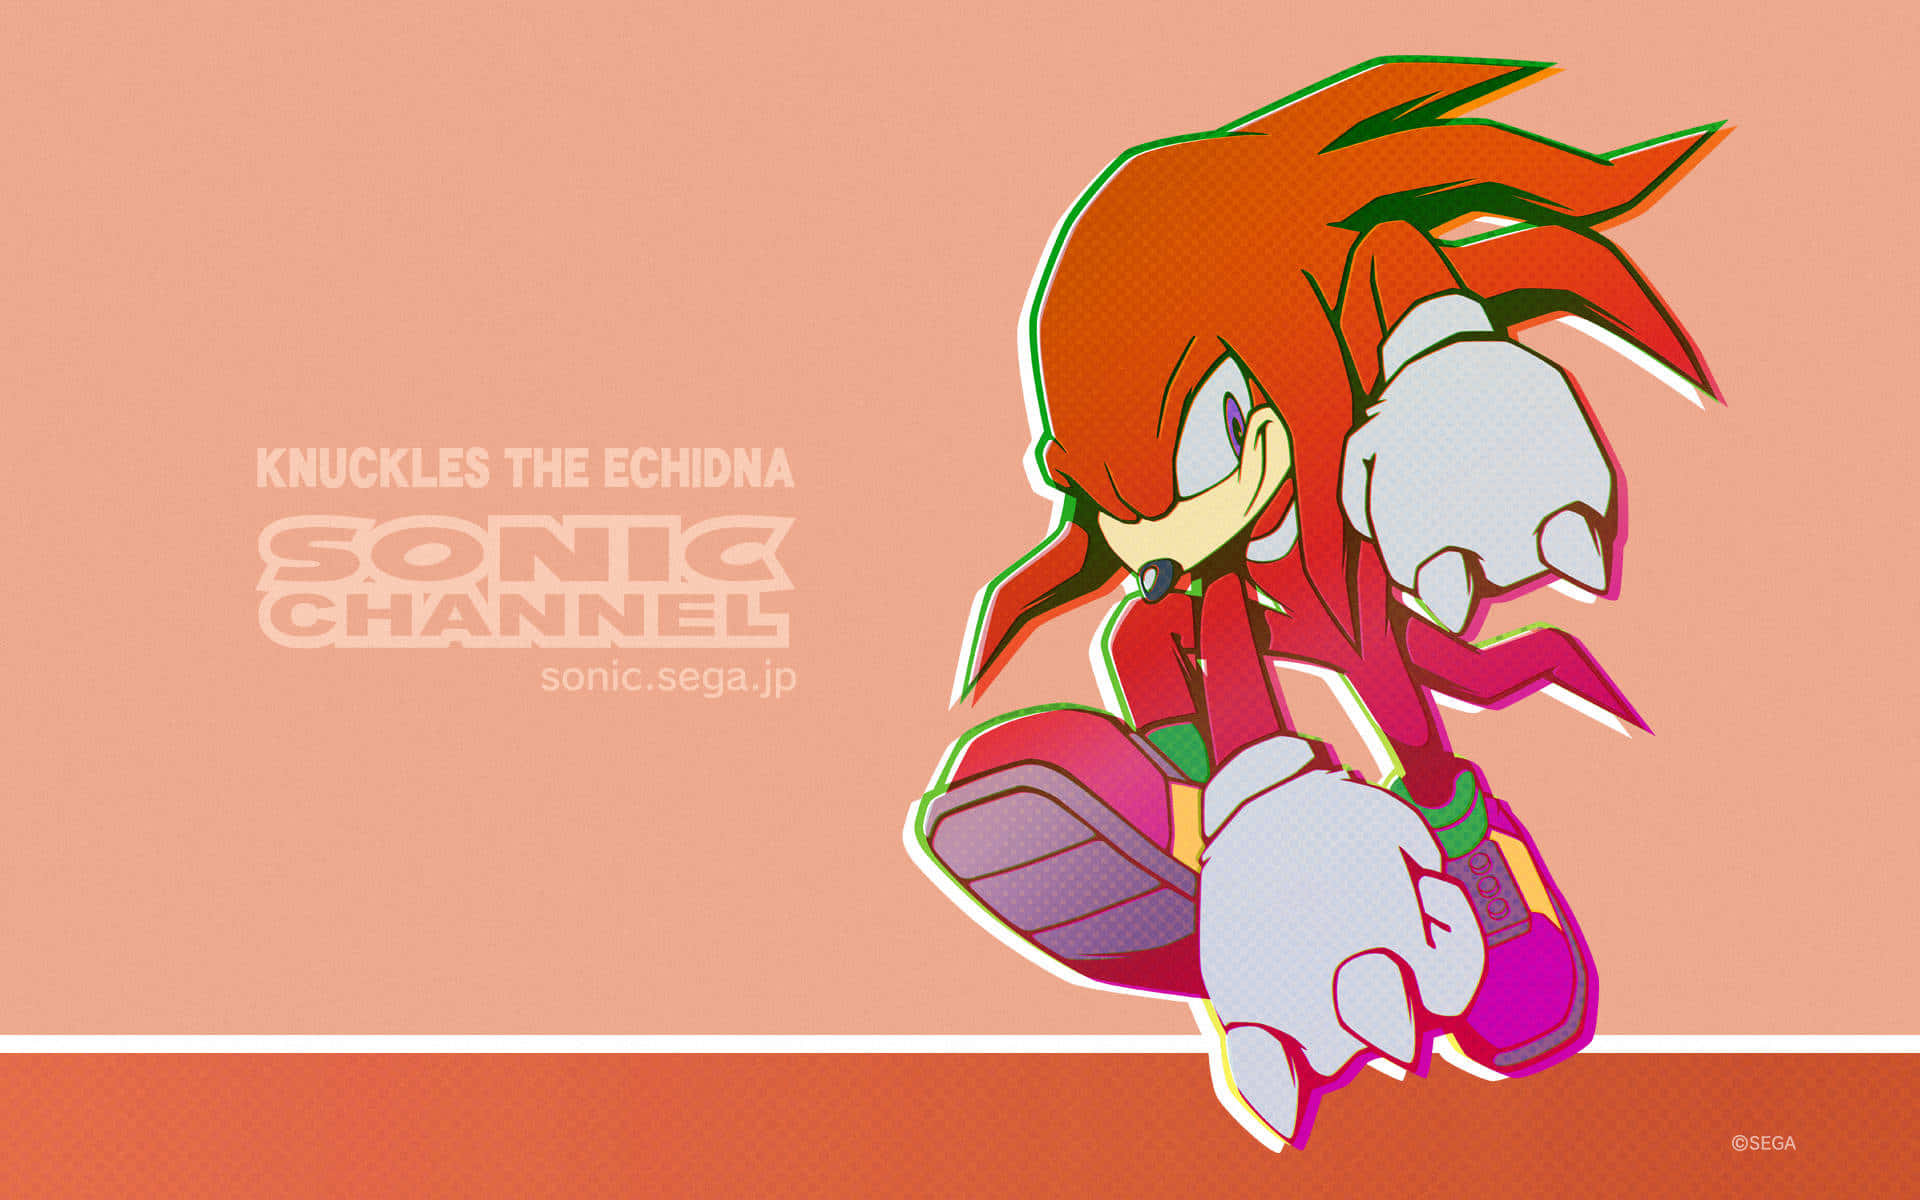 Knucklesthe Echidna, Un Personaggio Amato Dai Fan Della Serie Sonic The Hedgehog. Sfondo